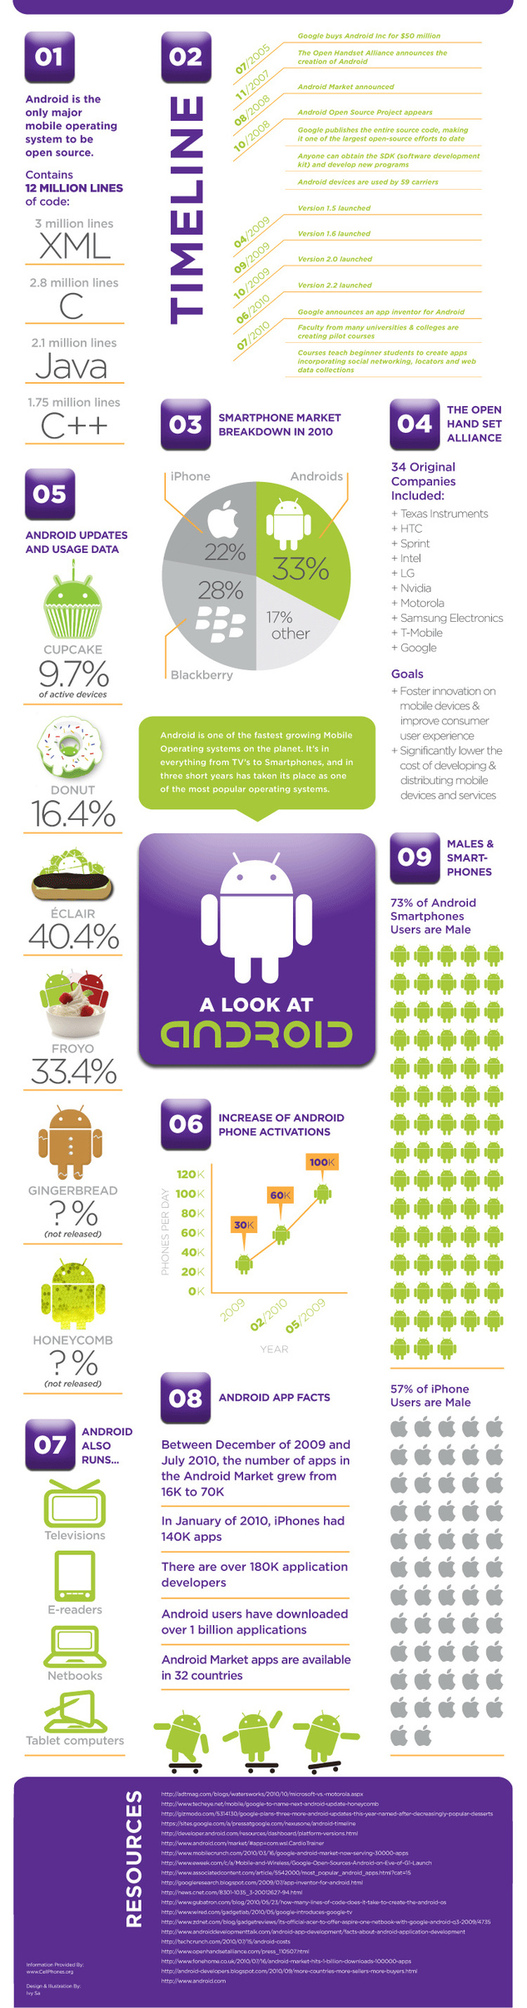 L'histoire d'Android en 1 image